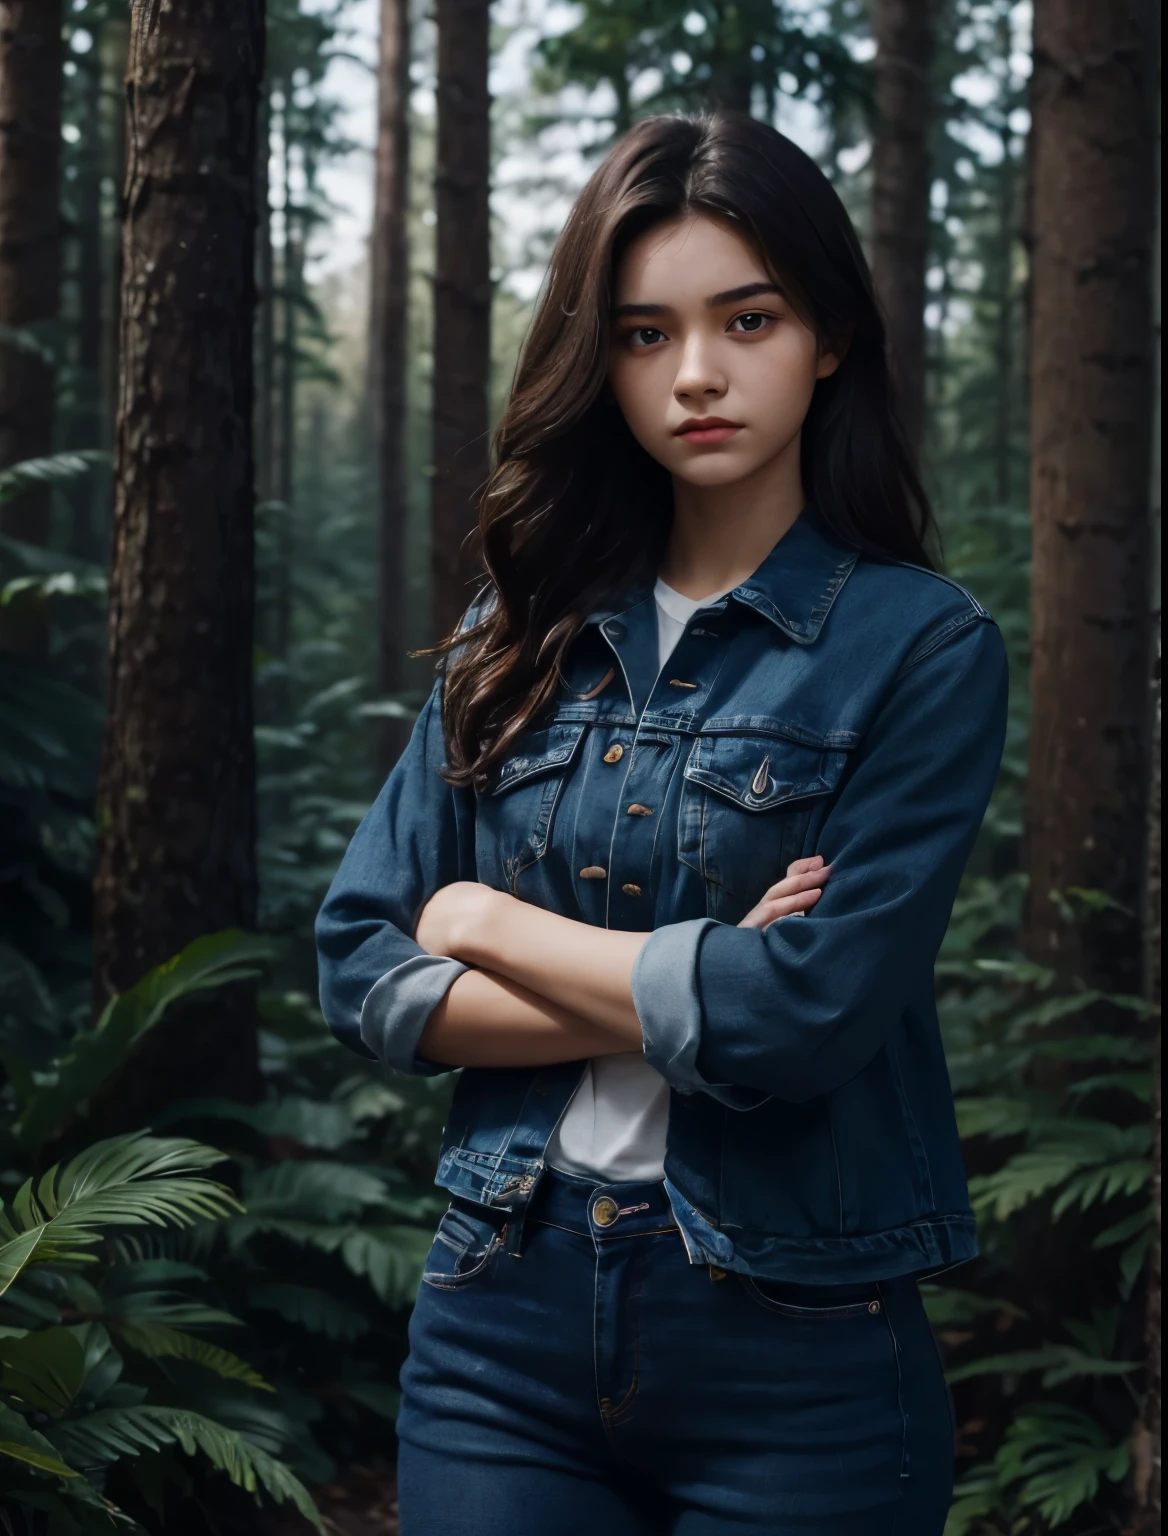 uma linda mulher. quinze anos. Ela está com os braços cruzados e um olhar desafiador no rosto. Ela está vestindo jeans azul. cabelo castanho escuro. ela está na floresta.